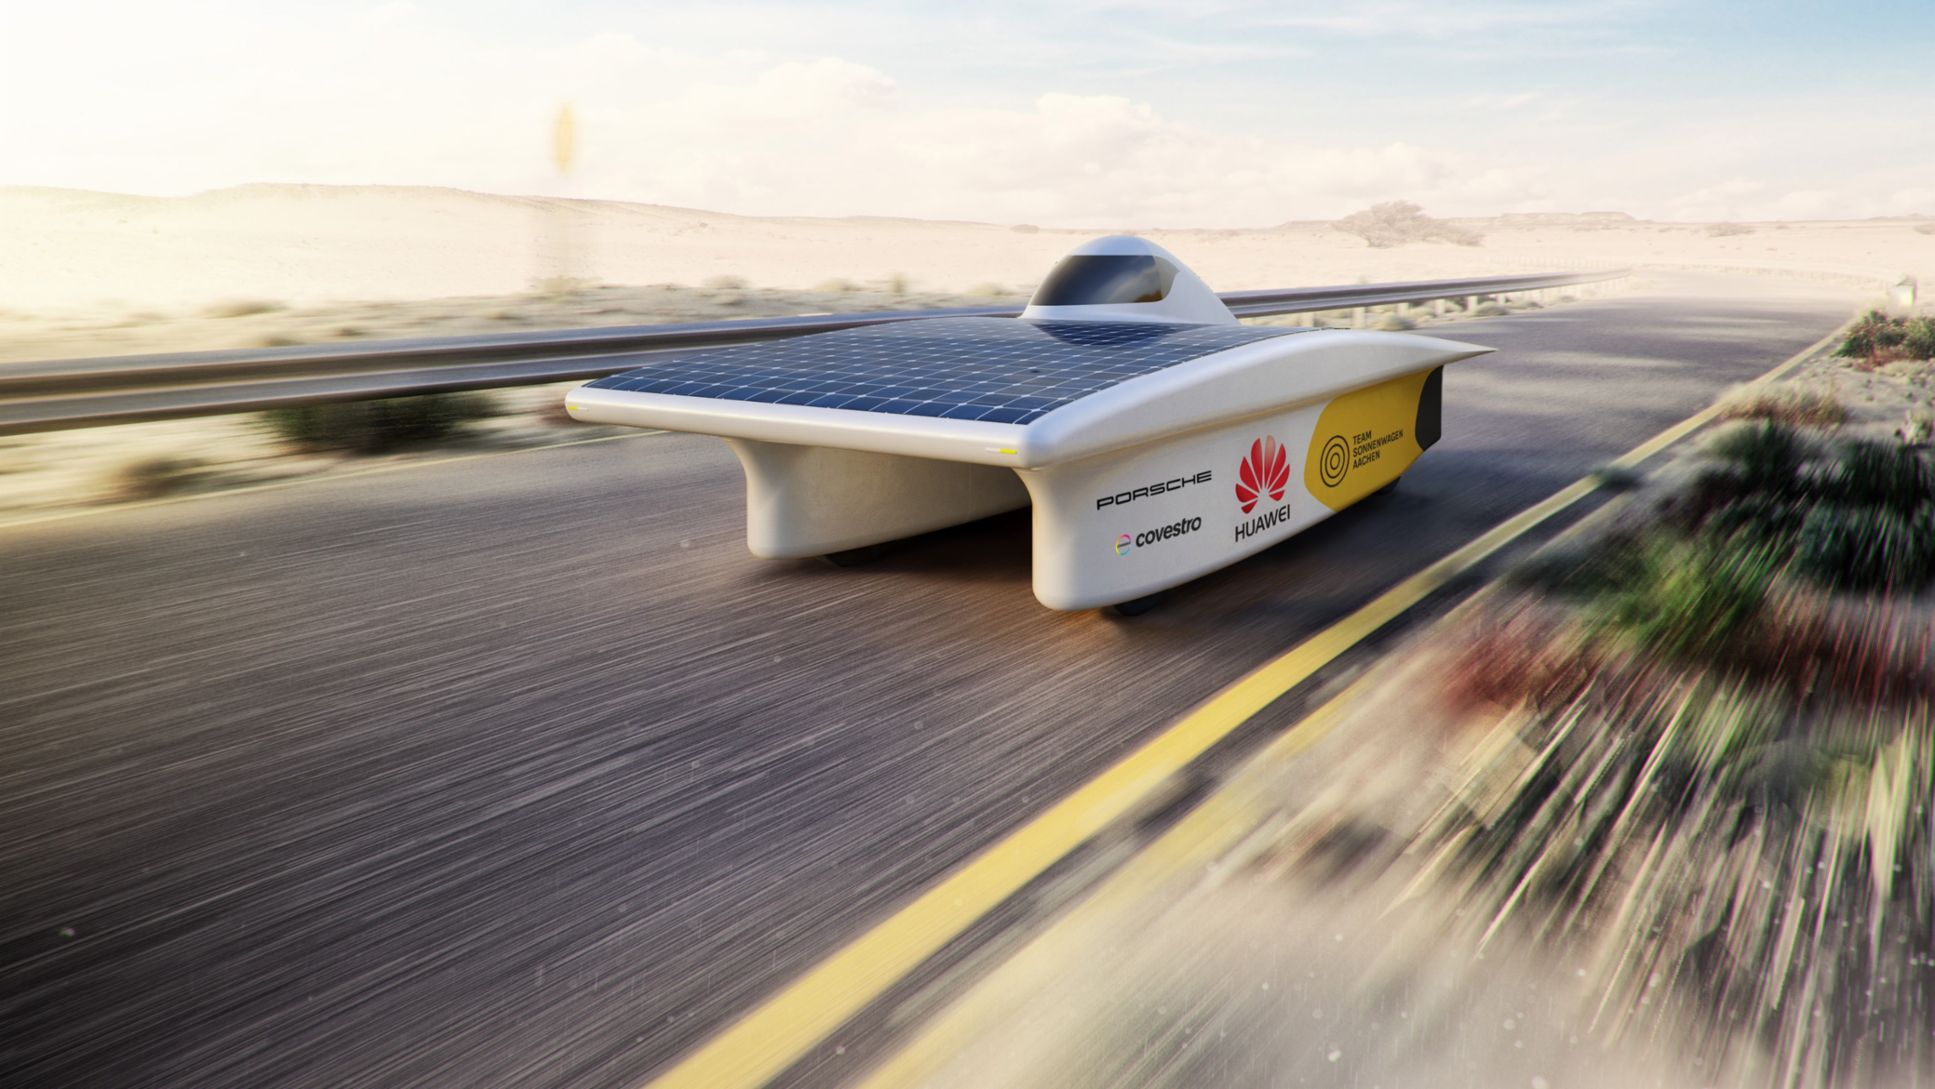 Solar-Rennwagen, Team Sonnenwagen der RWTH Aachen, 2017, Porsche AG